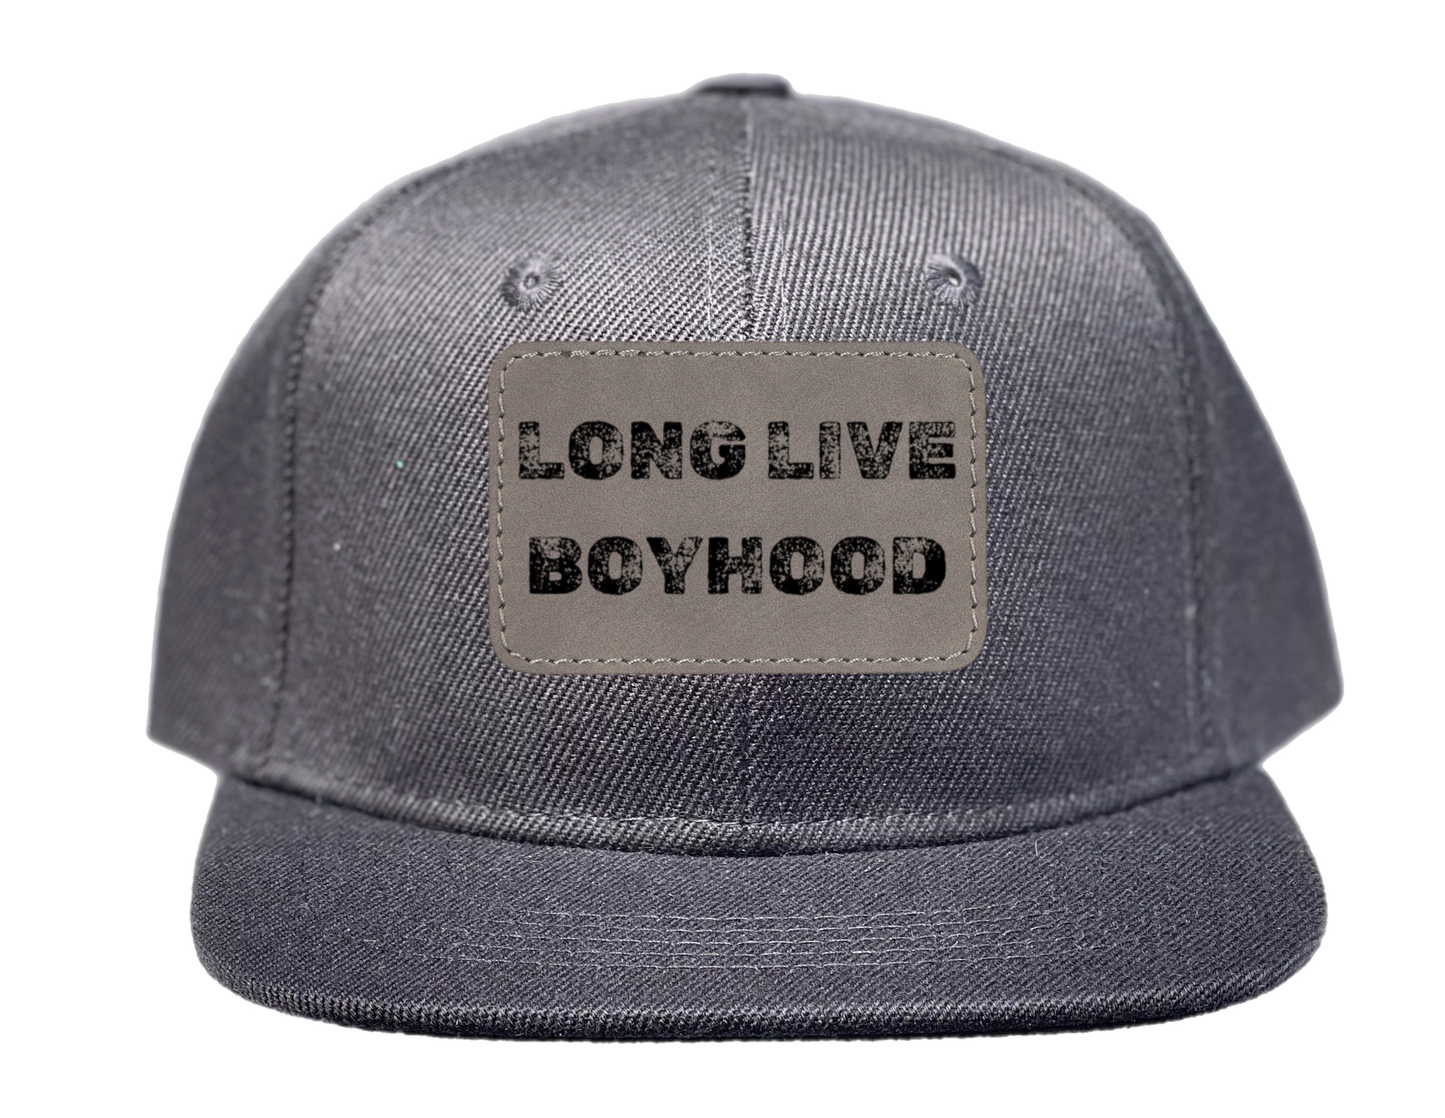 Long Live Boyhood Hat